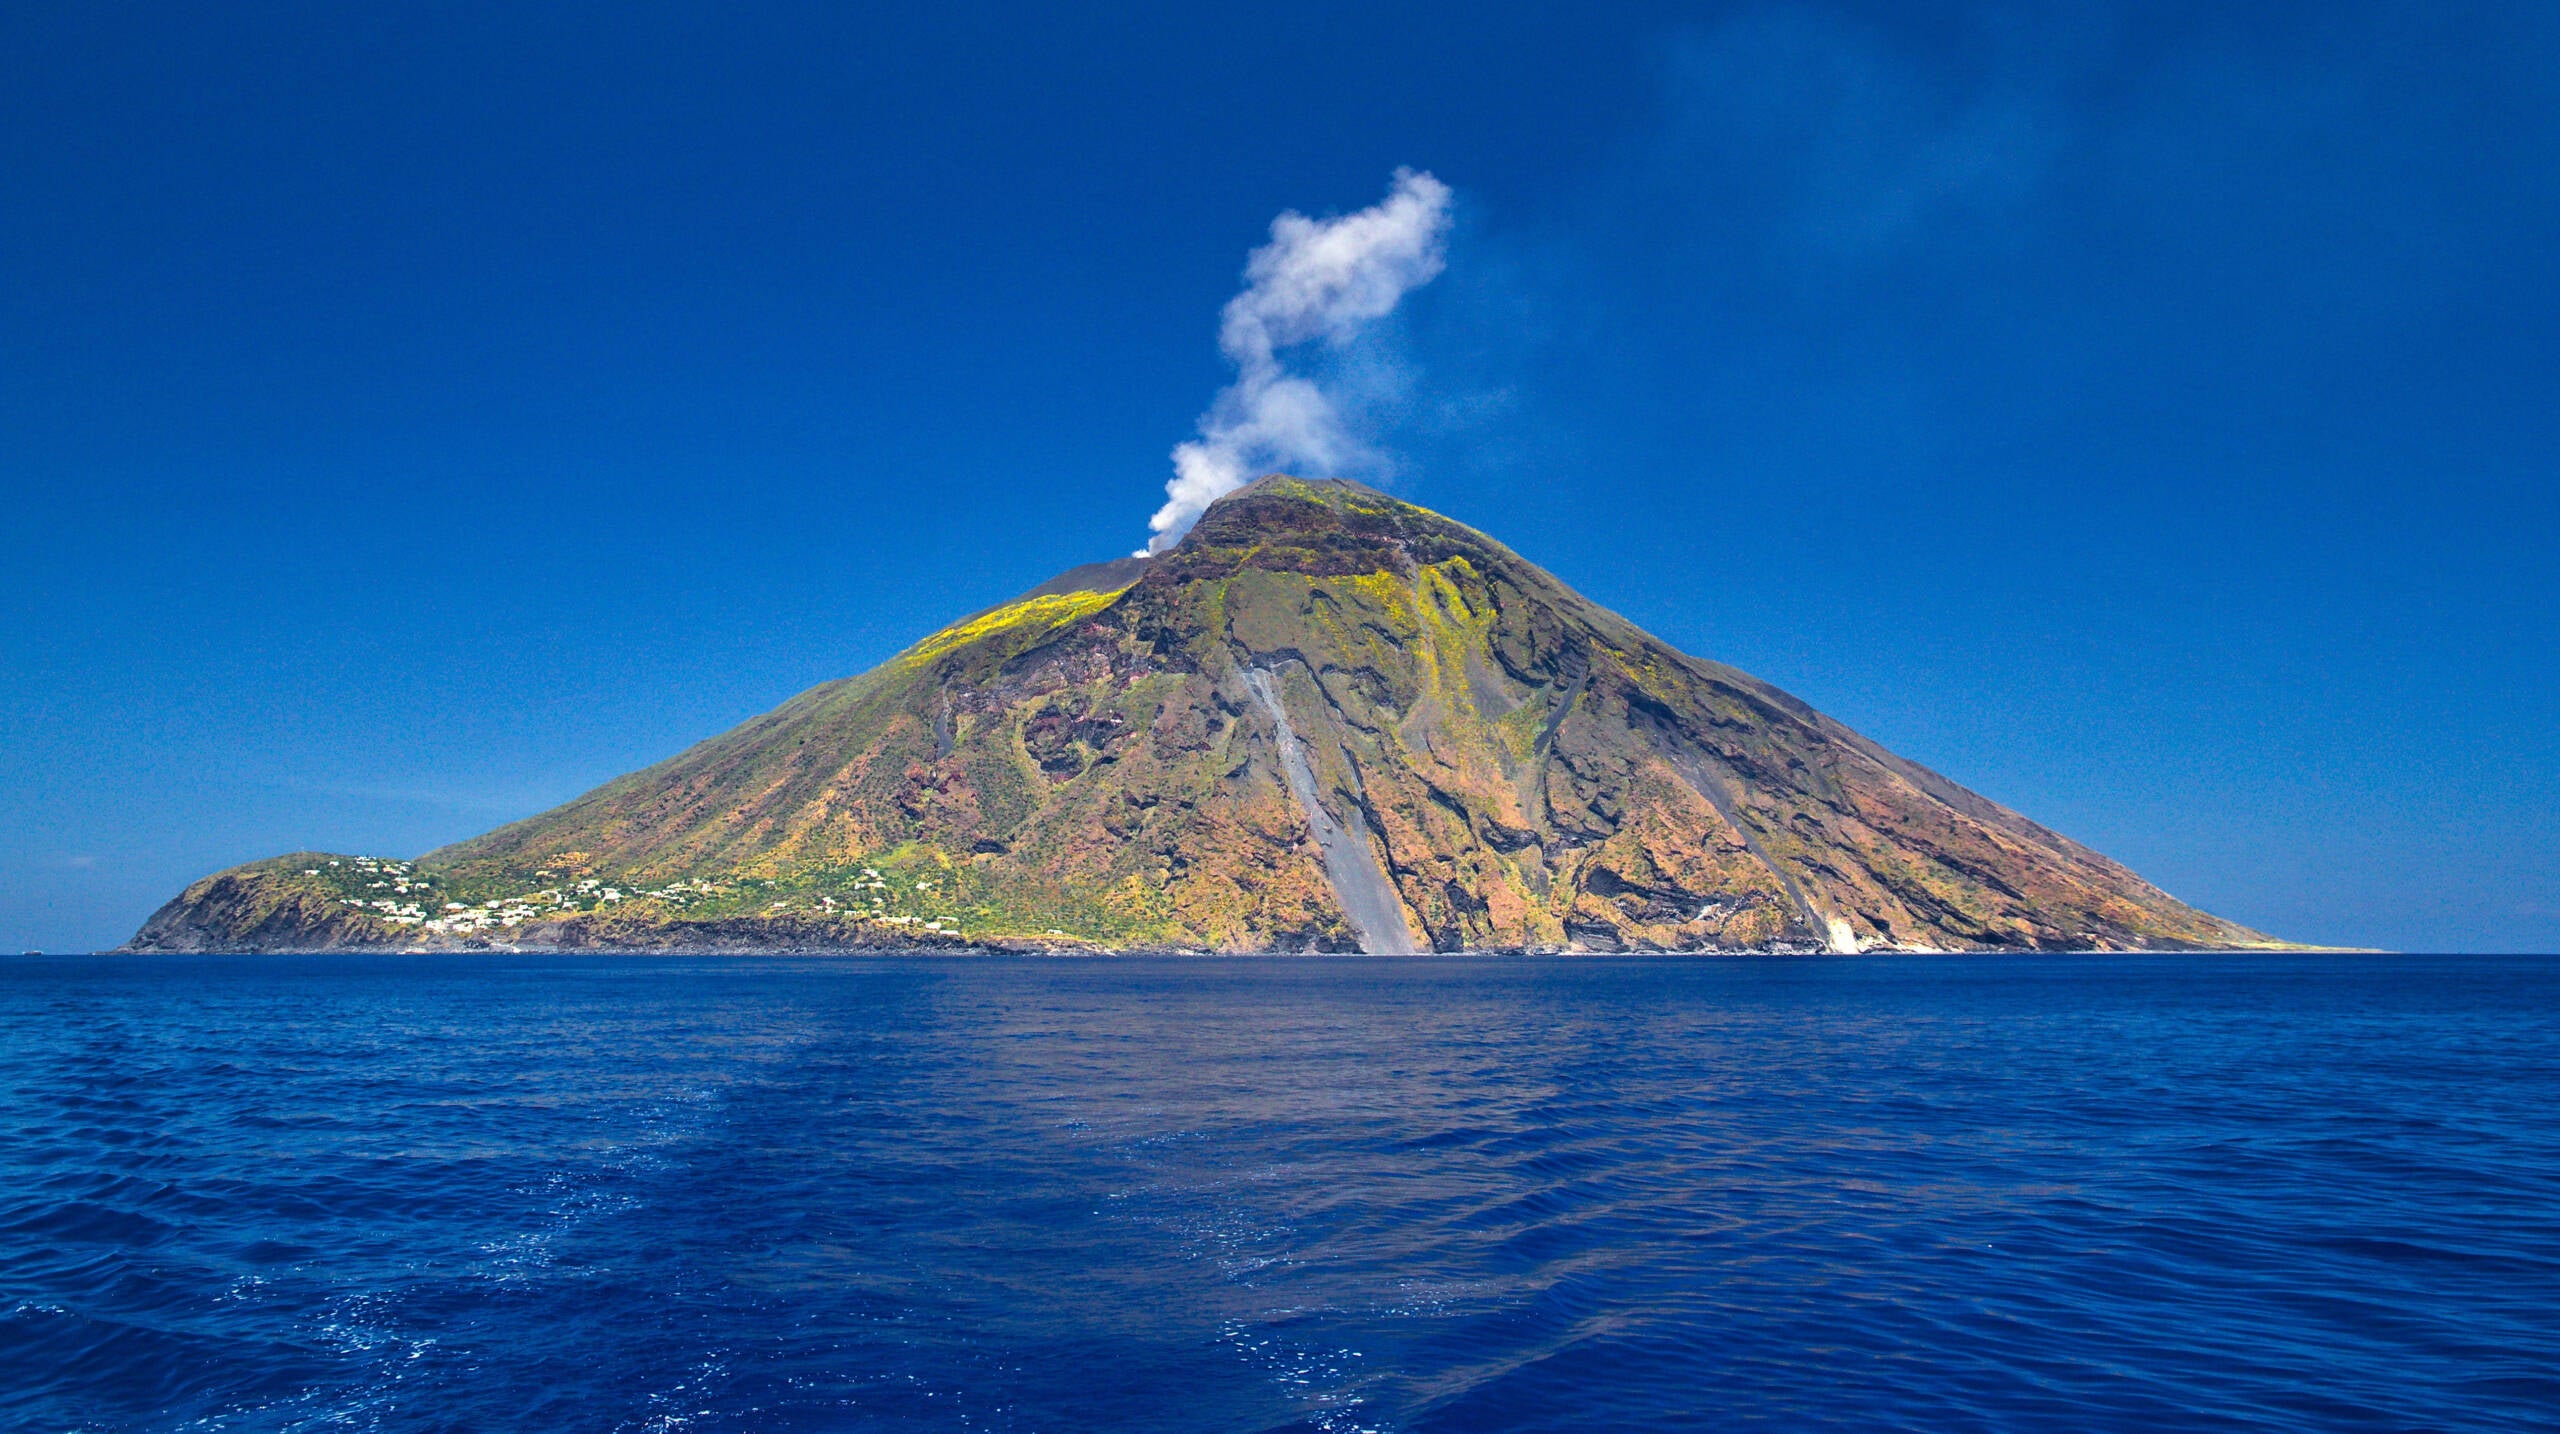 Stromboli volcanic island